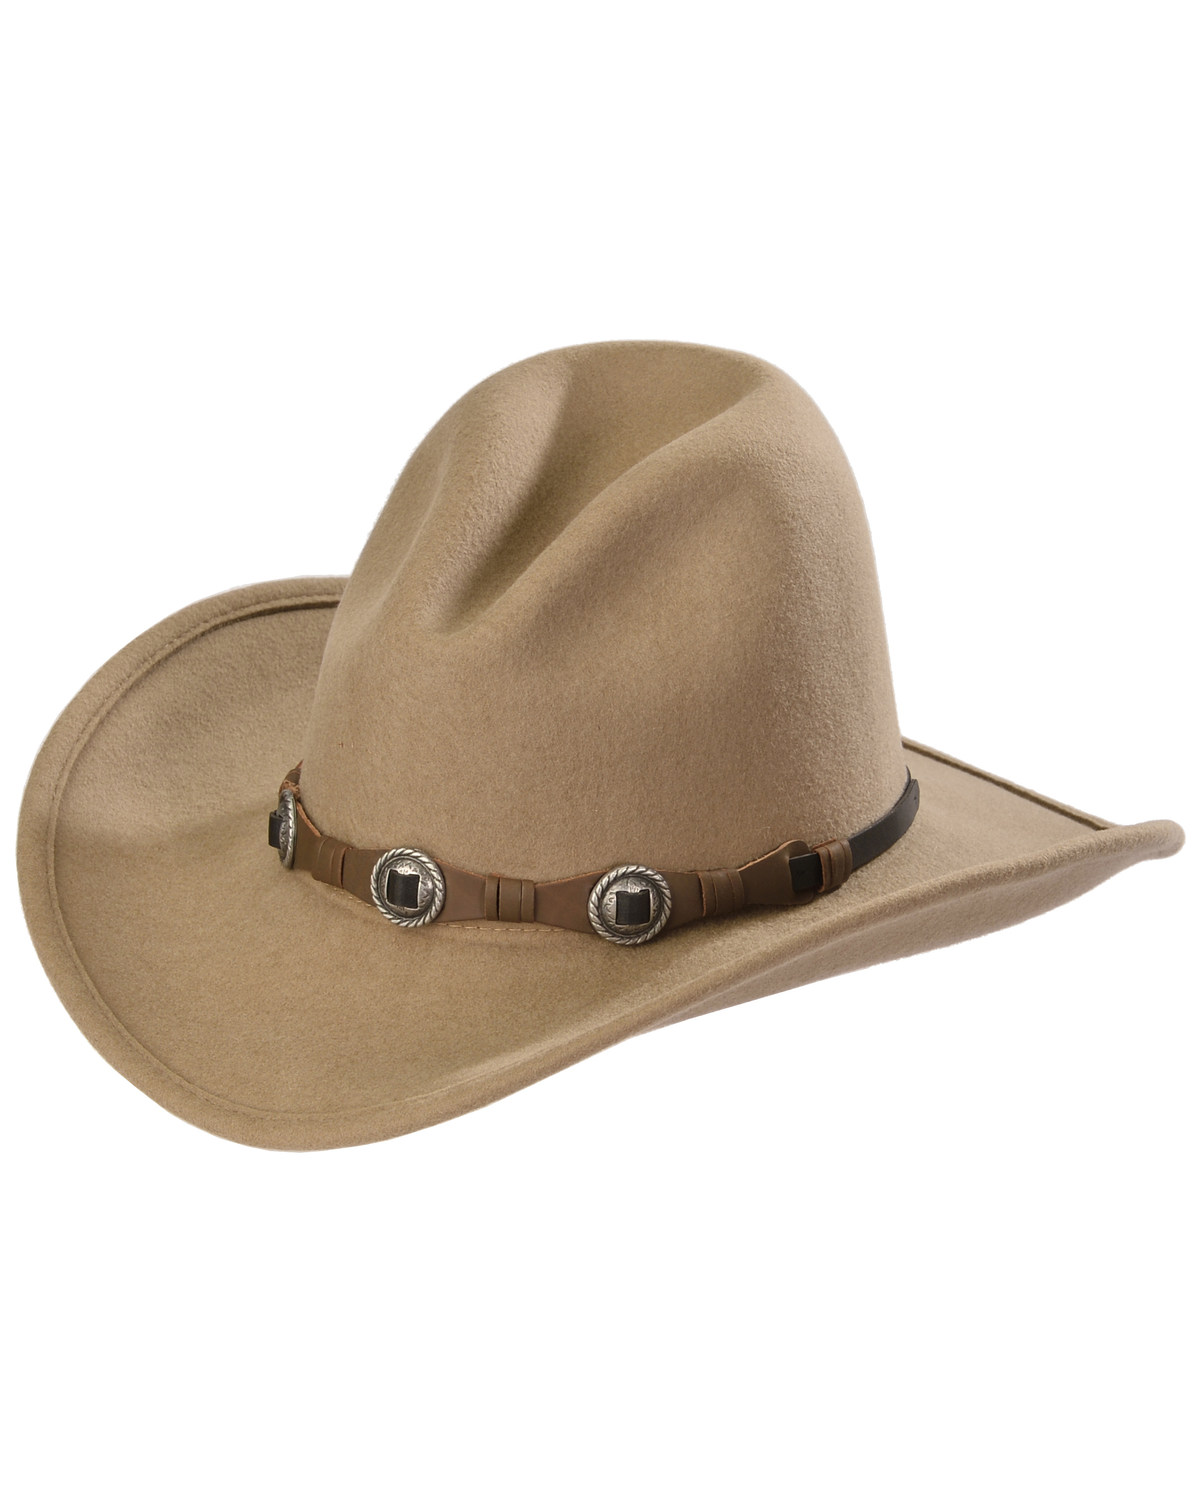 Silverado Men's Gus Crushable Felt Western Fashion Hat